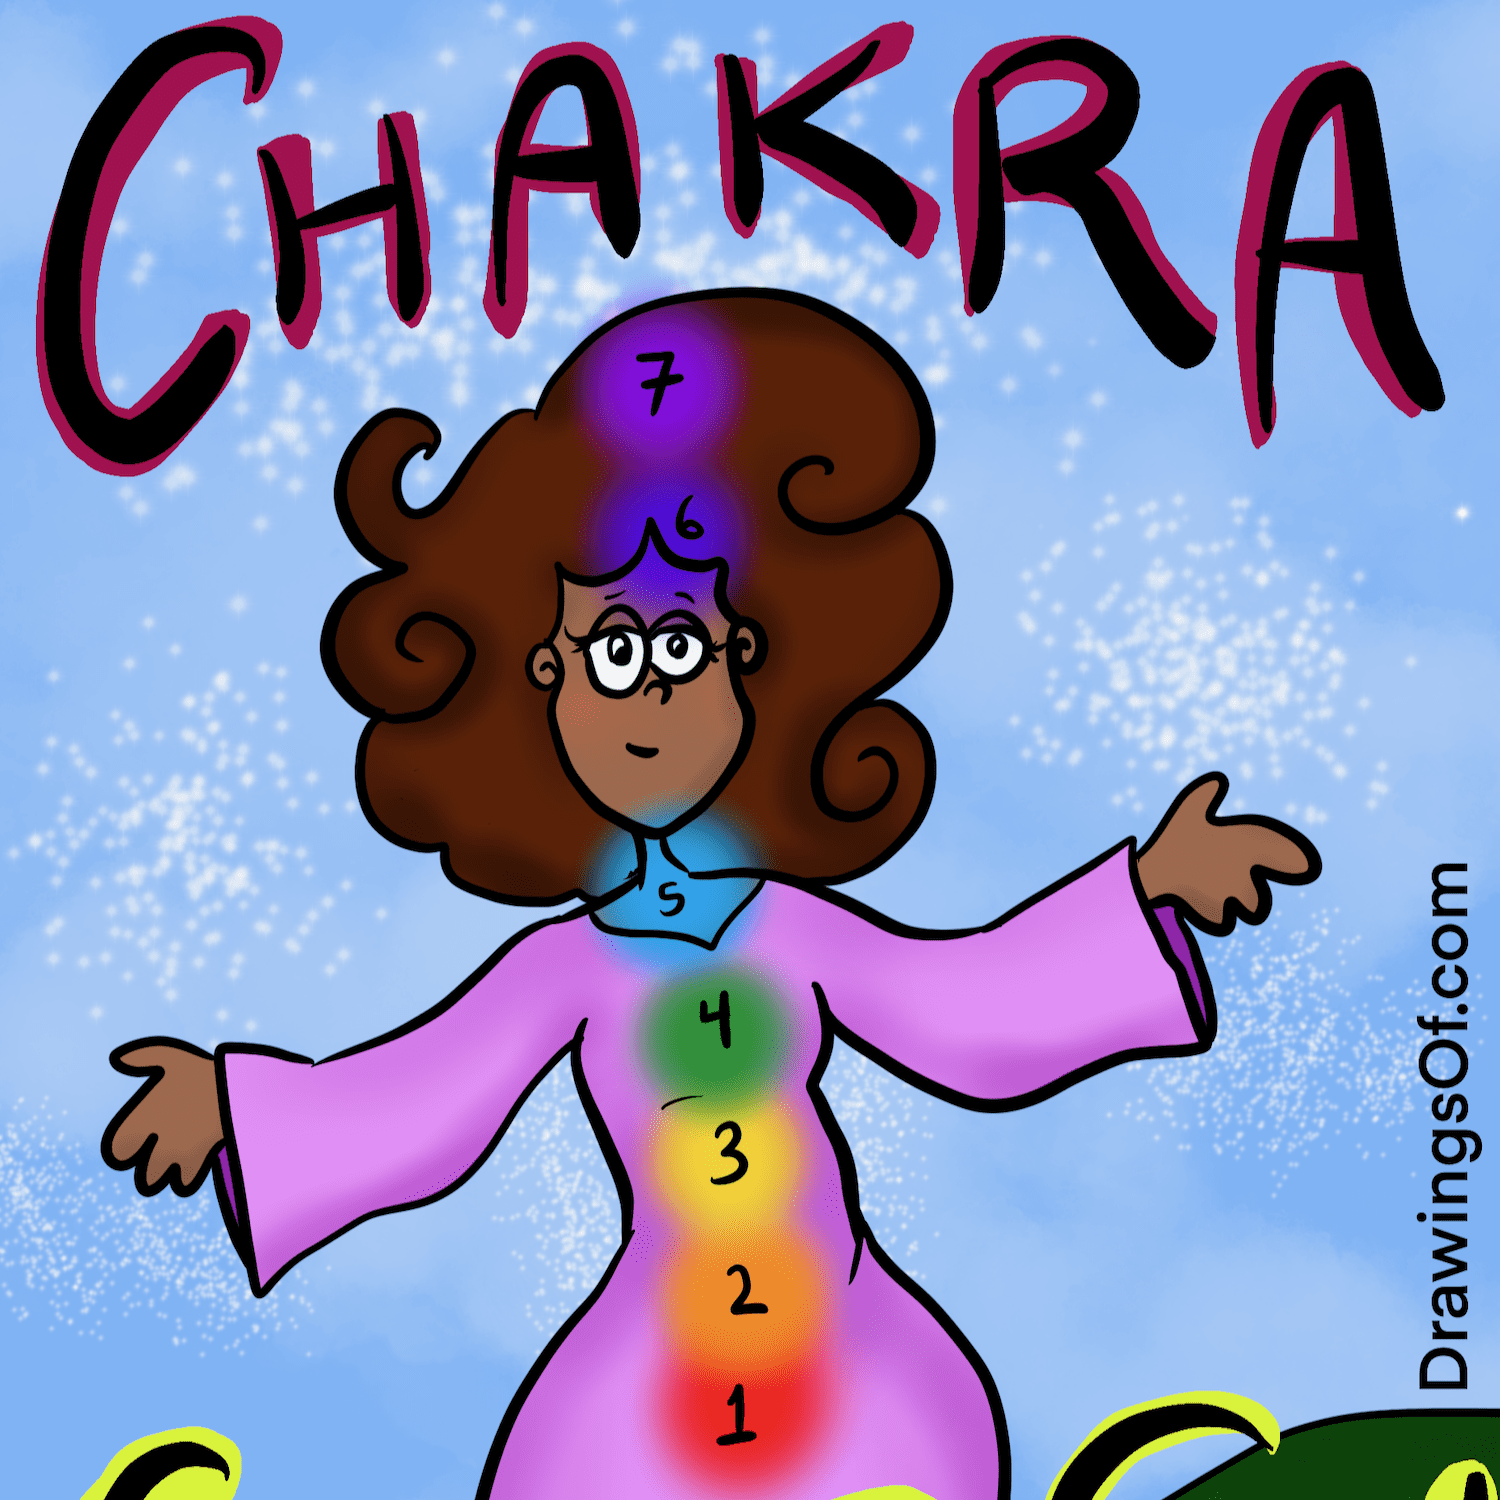 Chakra colors healing